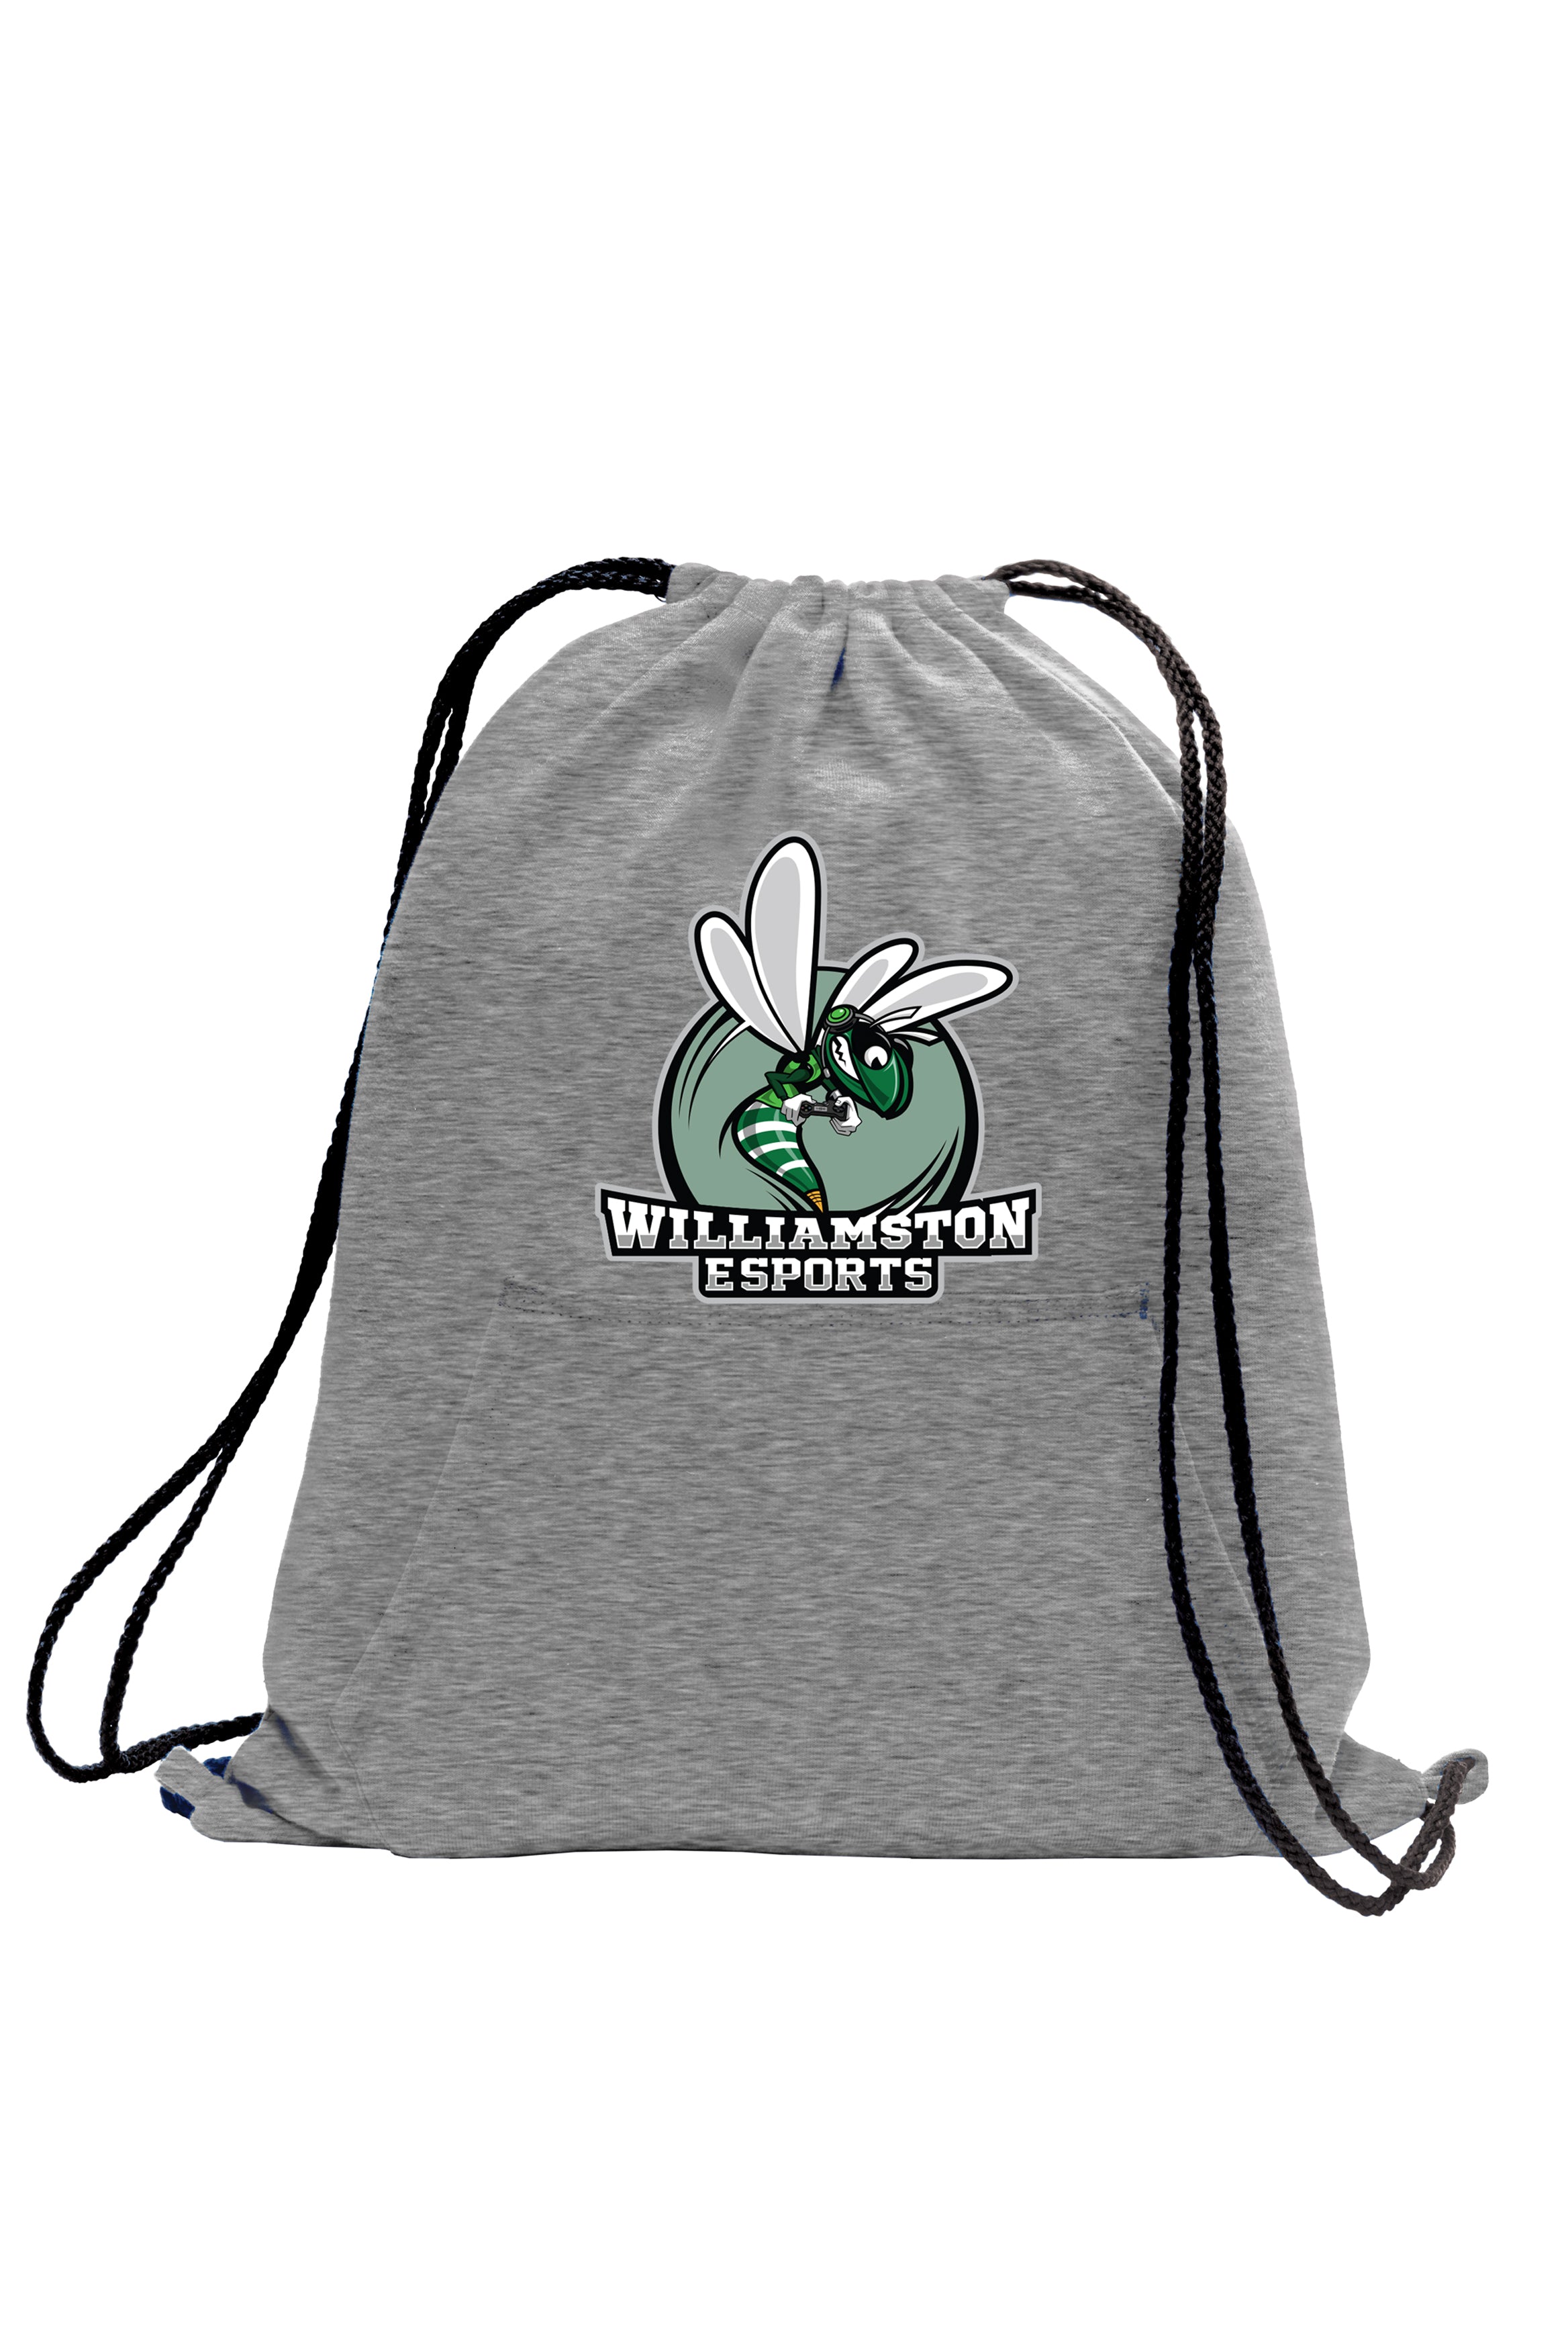 Williamston Esports - Drawstring Bag